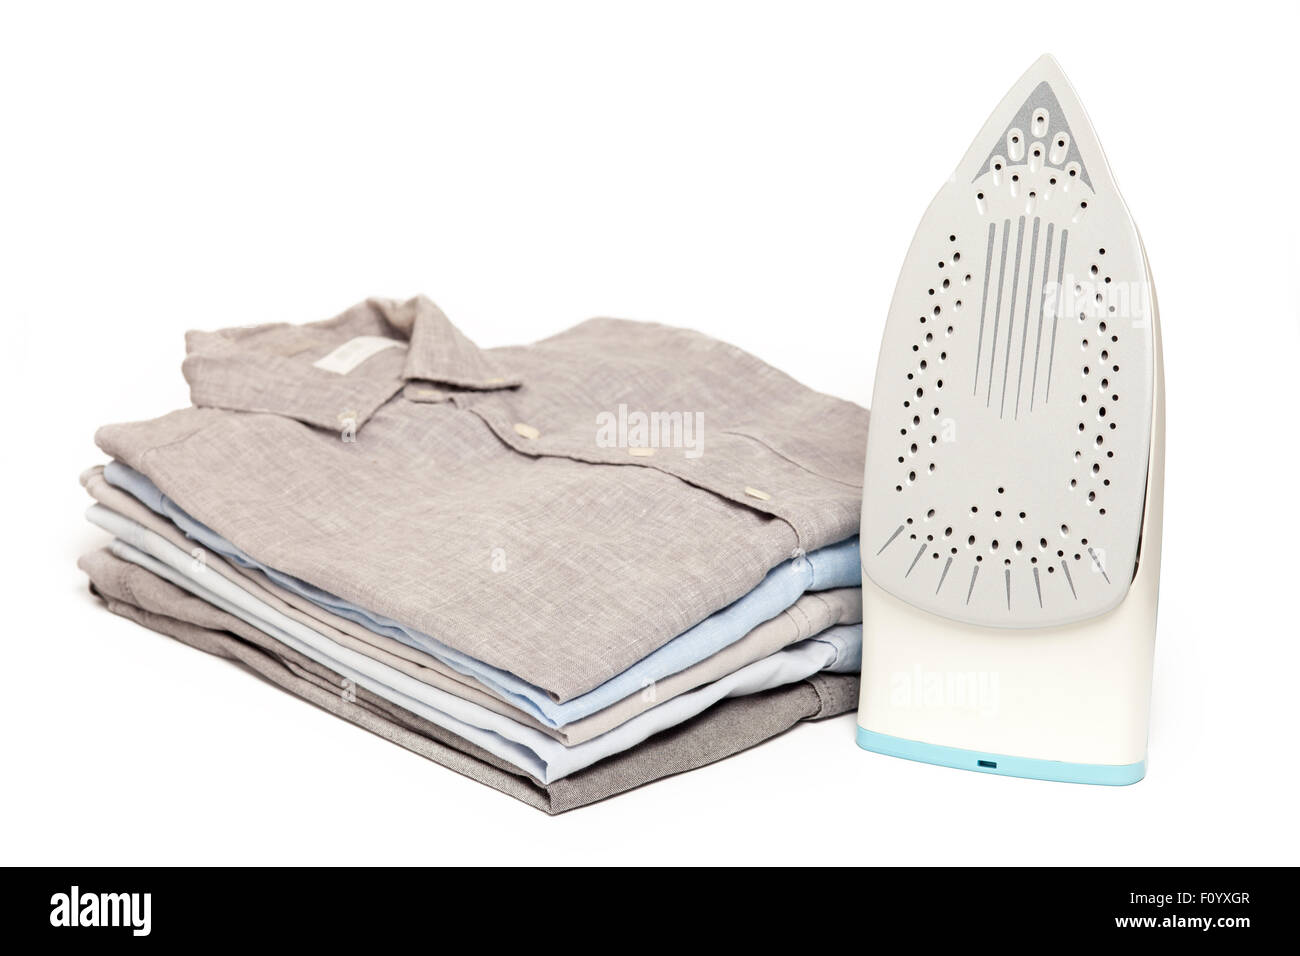 ein Bügeleisen/-Brett Hausarbeit gebügelt gefaltete Hemden sauber Konzept Stillleben Kleidungsstück Bekleidung Stoff innen weißer Hintergrund Stockfoto